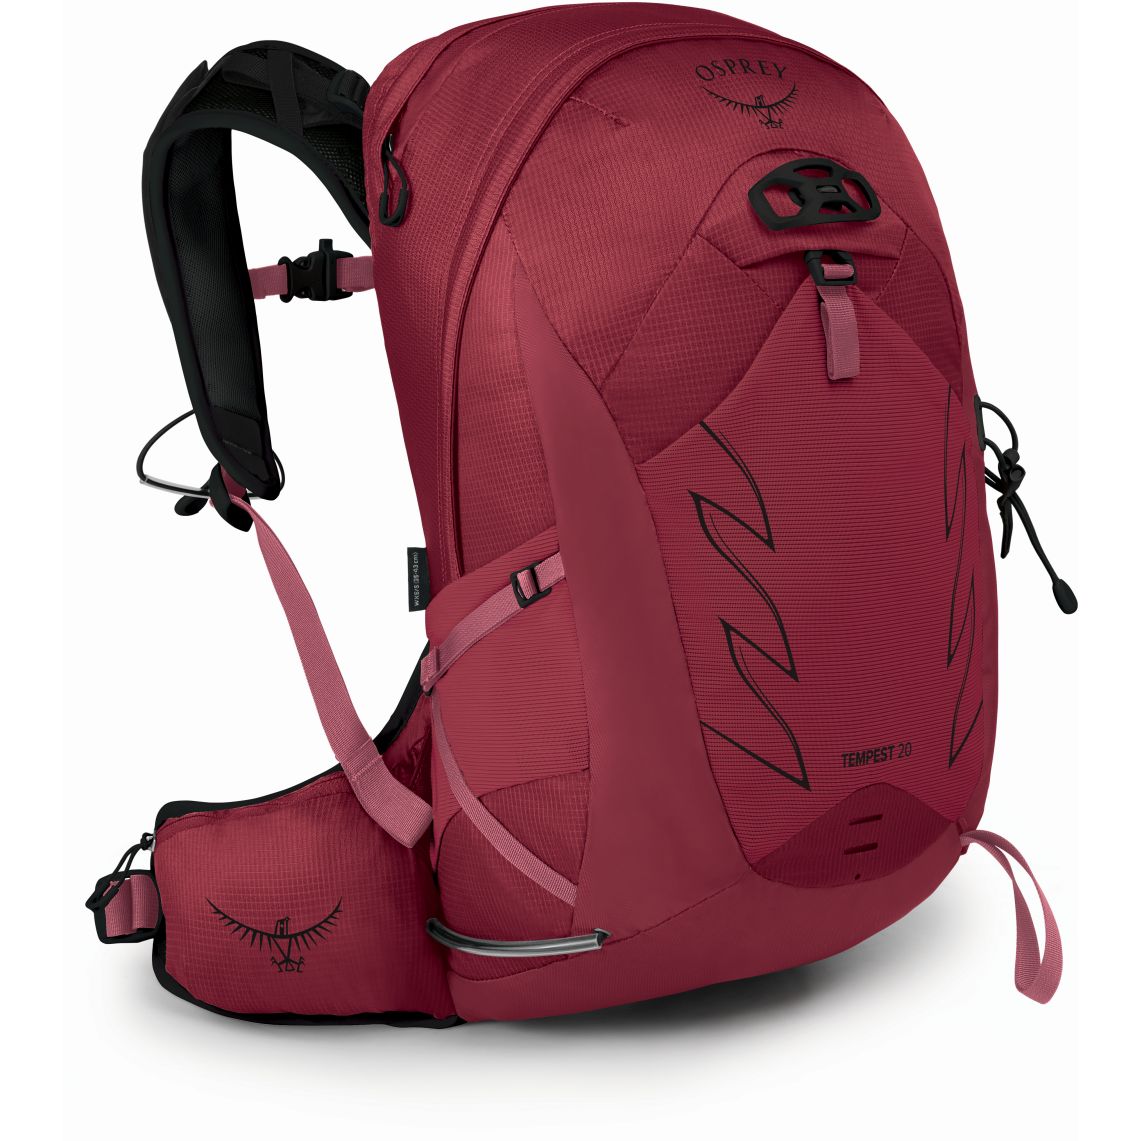 Produktbild von Osprey Tempest 20 Rucksack Damen - Kakio Pink - M/L